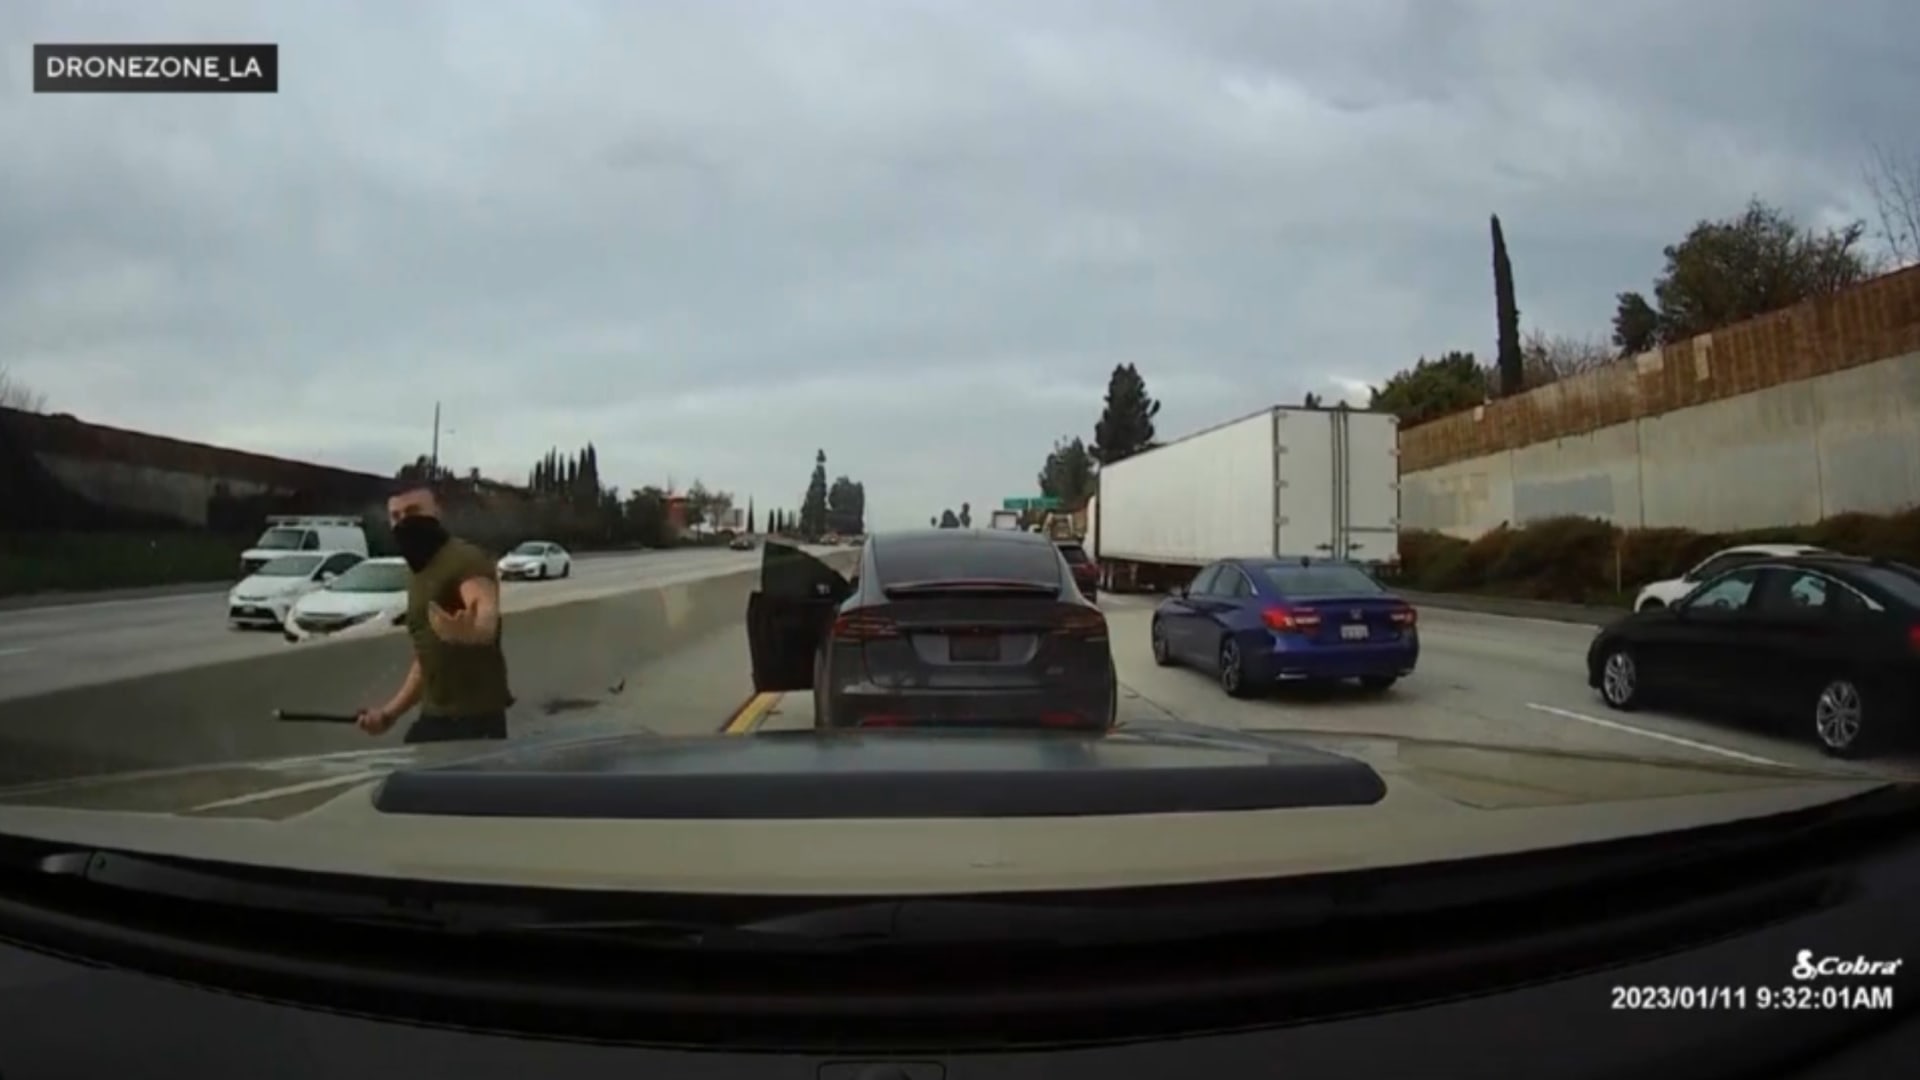 مشهد مخيف رصدته كاميرا.. شاهد ما فعله سائق عندما حاول رجل تصويره بهاتفه على الطريق